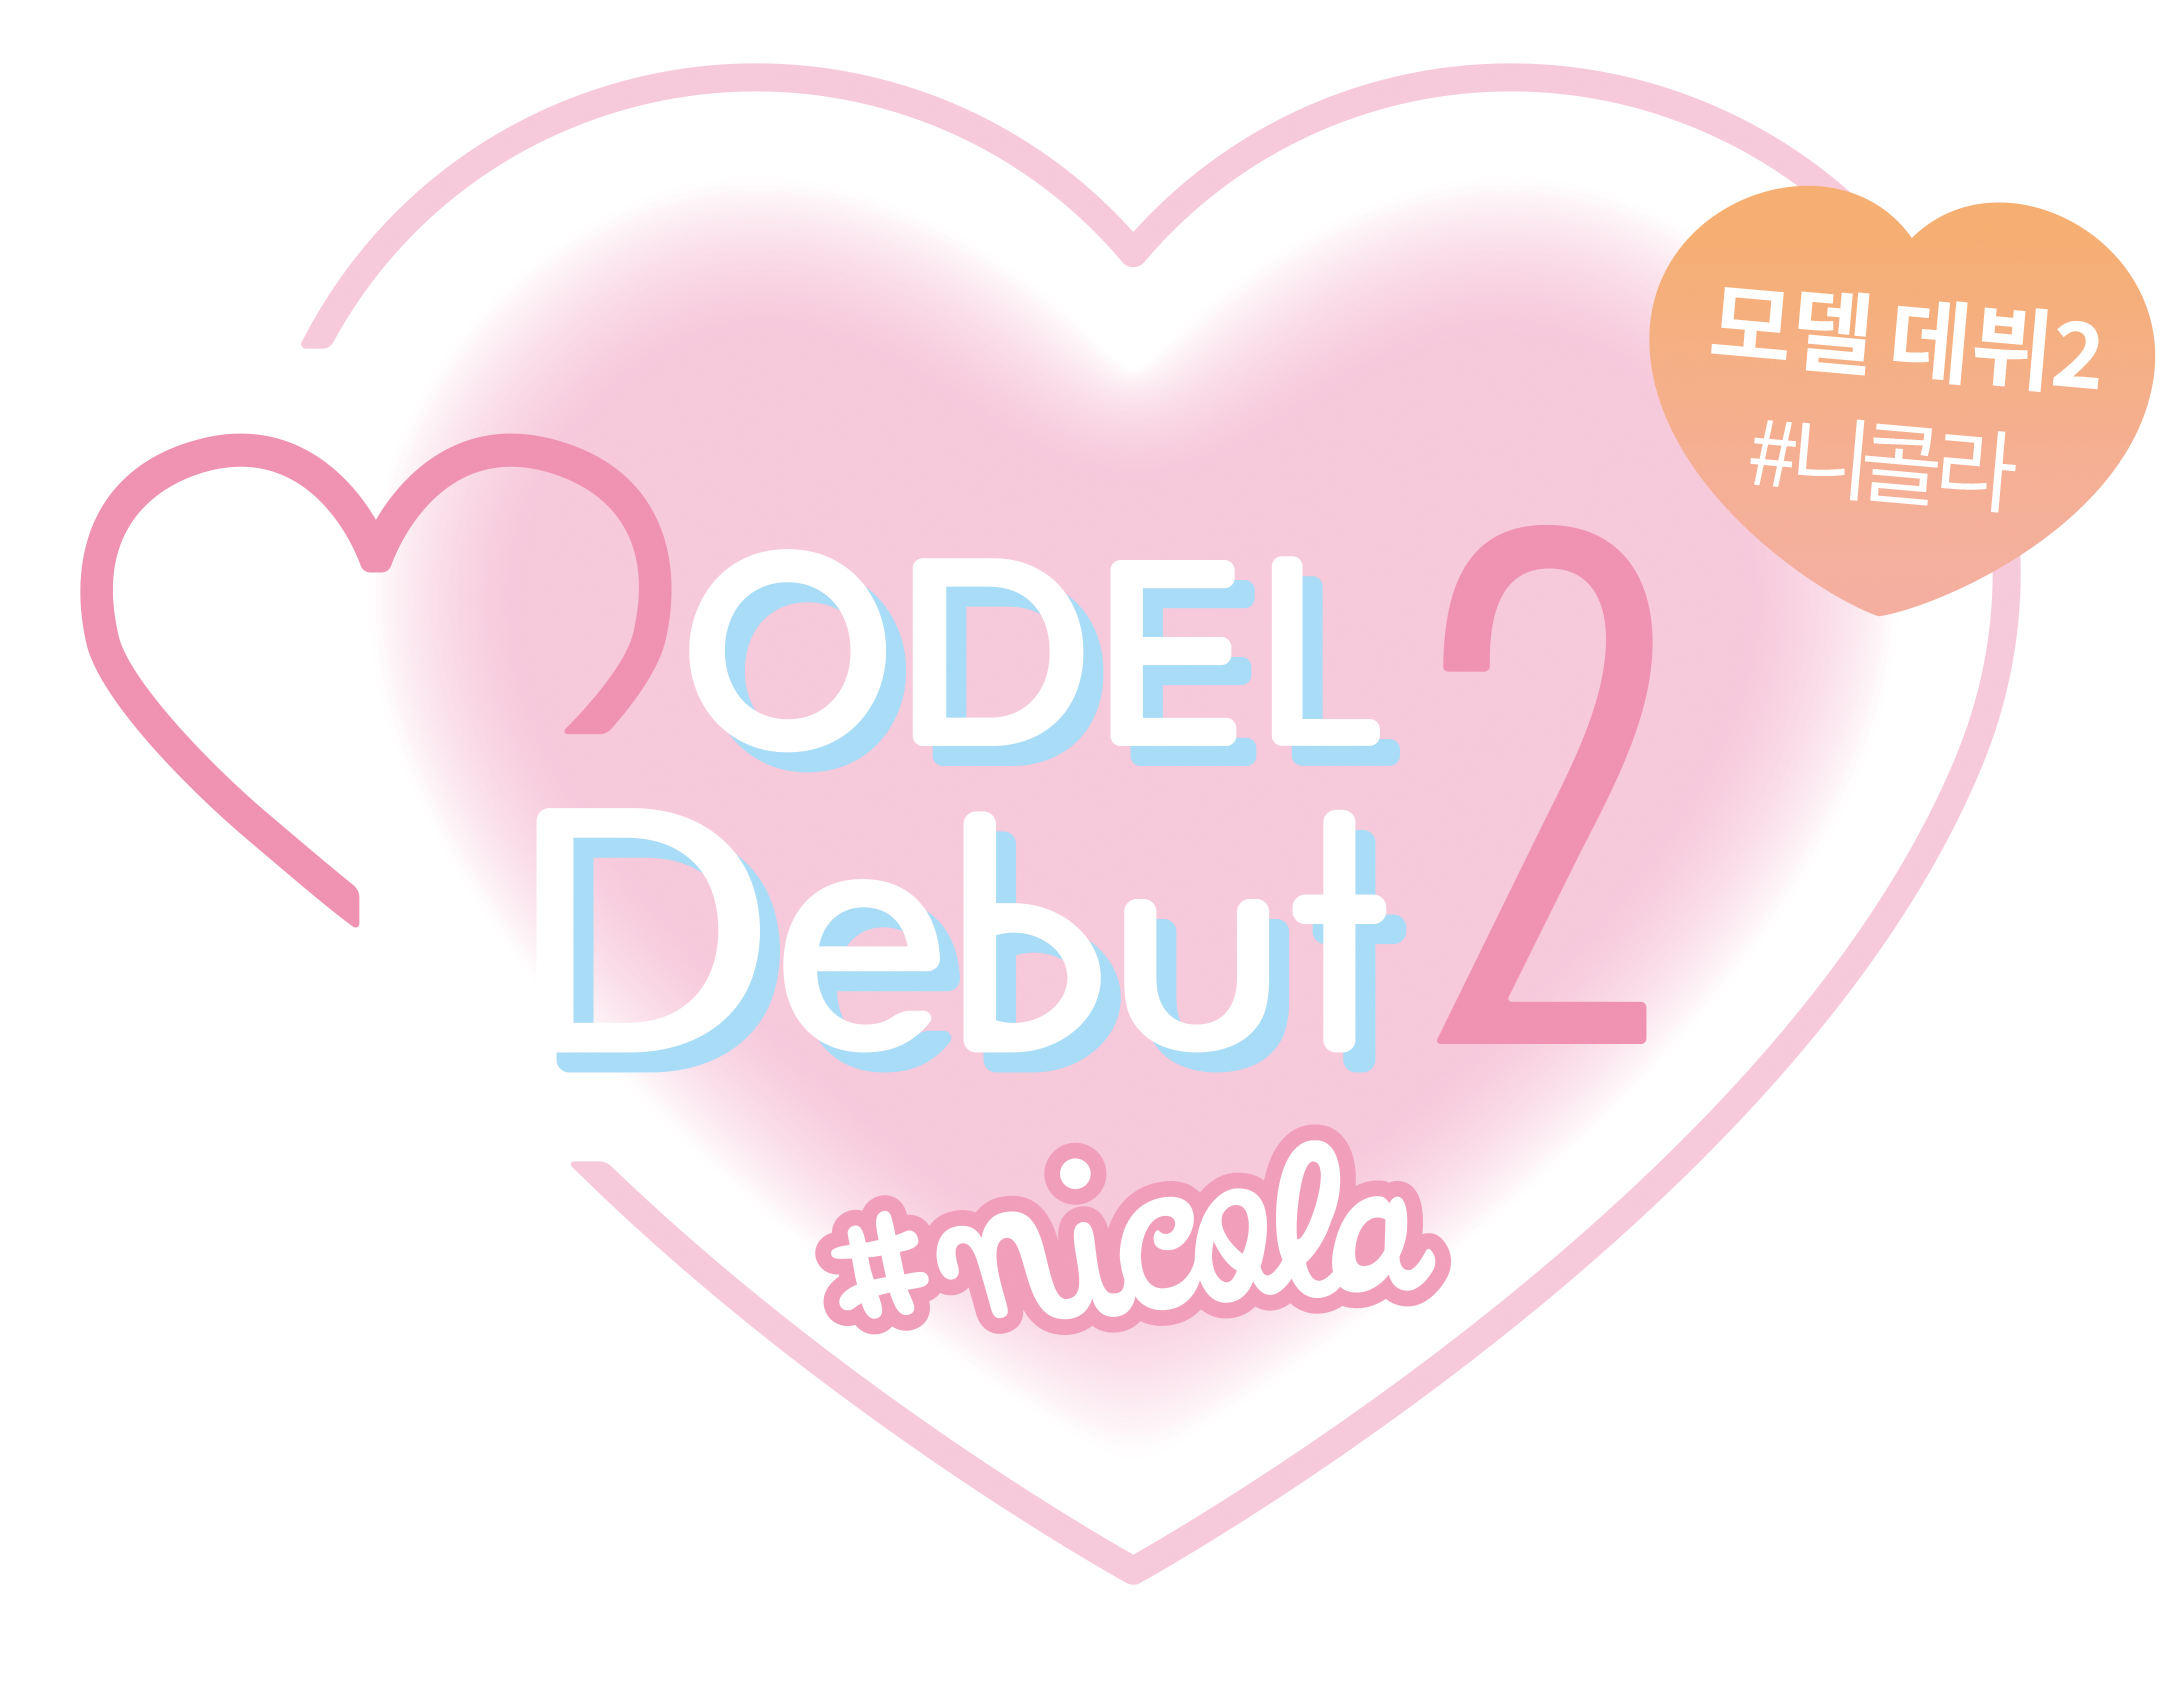 MODEL Debut2 #nicola / 모델 데뷔2 니콜라